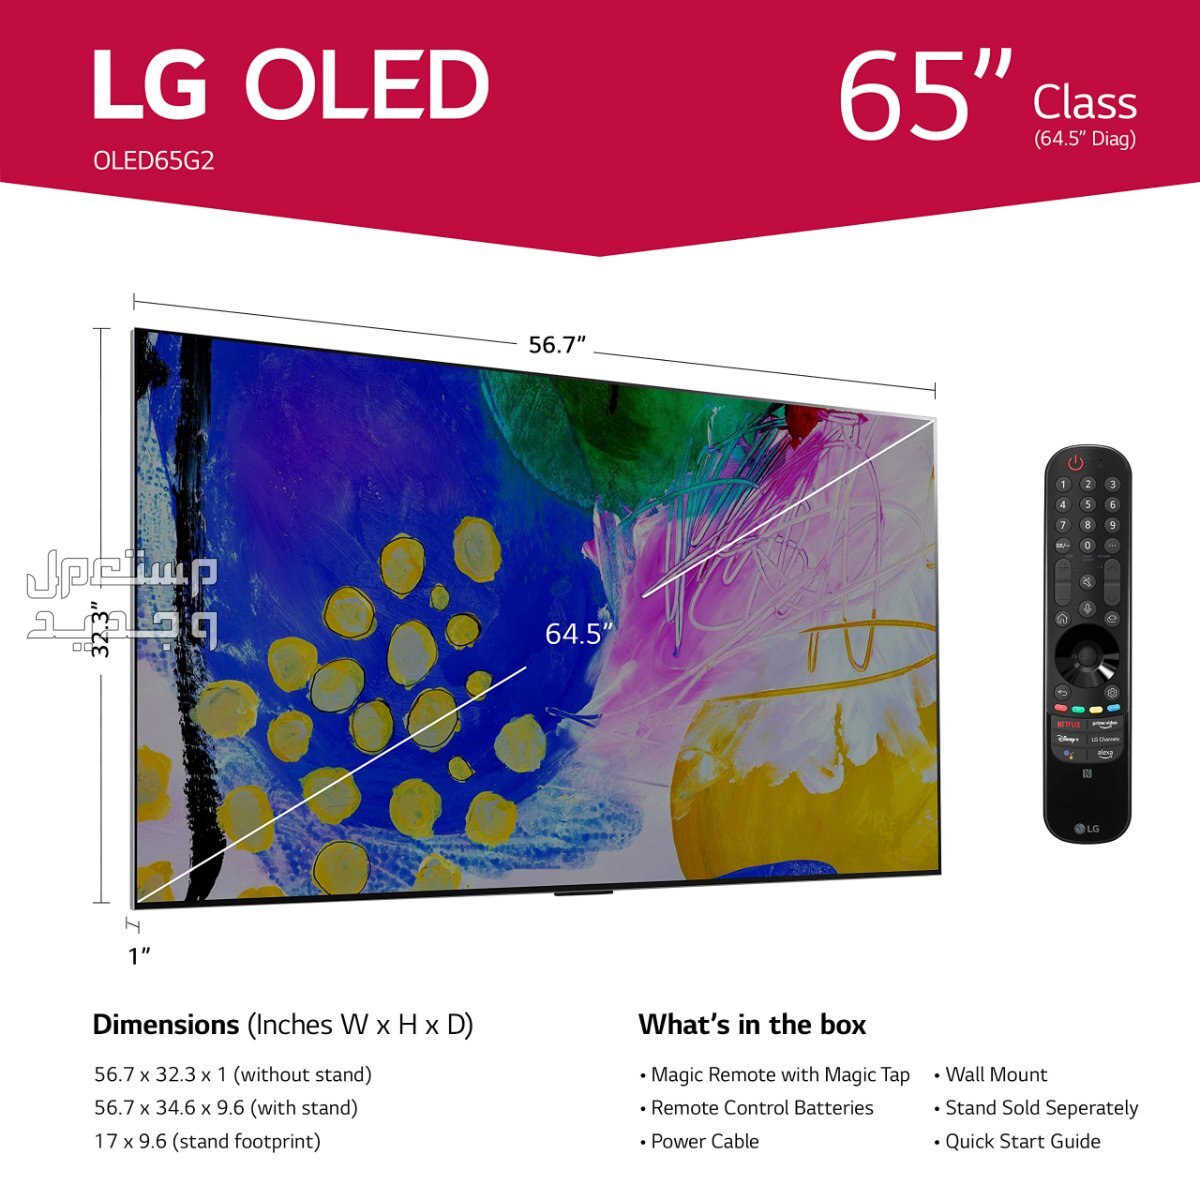 تعرف على مواصفات شاشة سمارت LG G2 OLED في اليَمَن LG G2 OLED